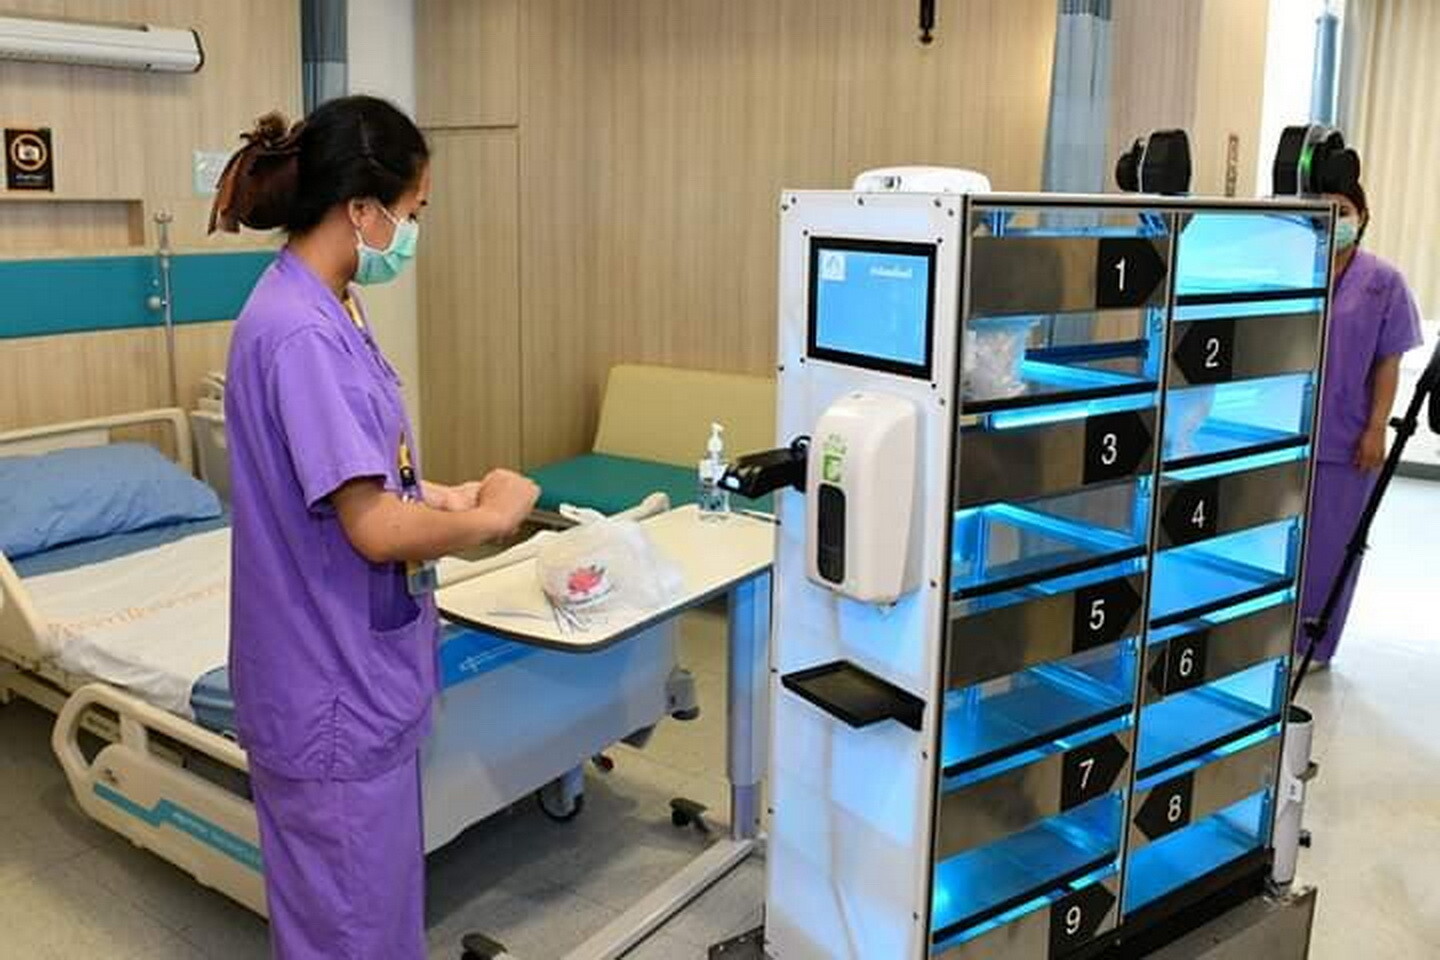 มจธ. ตั้ง "HAC - FIBO" ศูนย์รวมงานวิจัยและพัฒนาเทคโนโลยีด้านหุ่นยนต์ทางการแพทย์ ต่อยอดสู่การใช้งานจริงในโรงพยาบาล